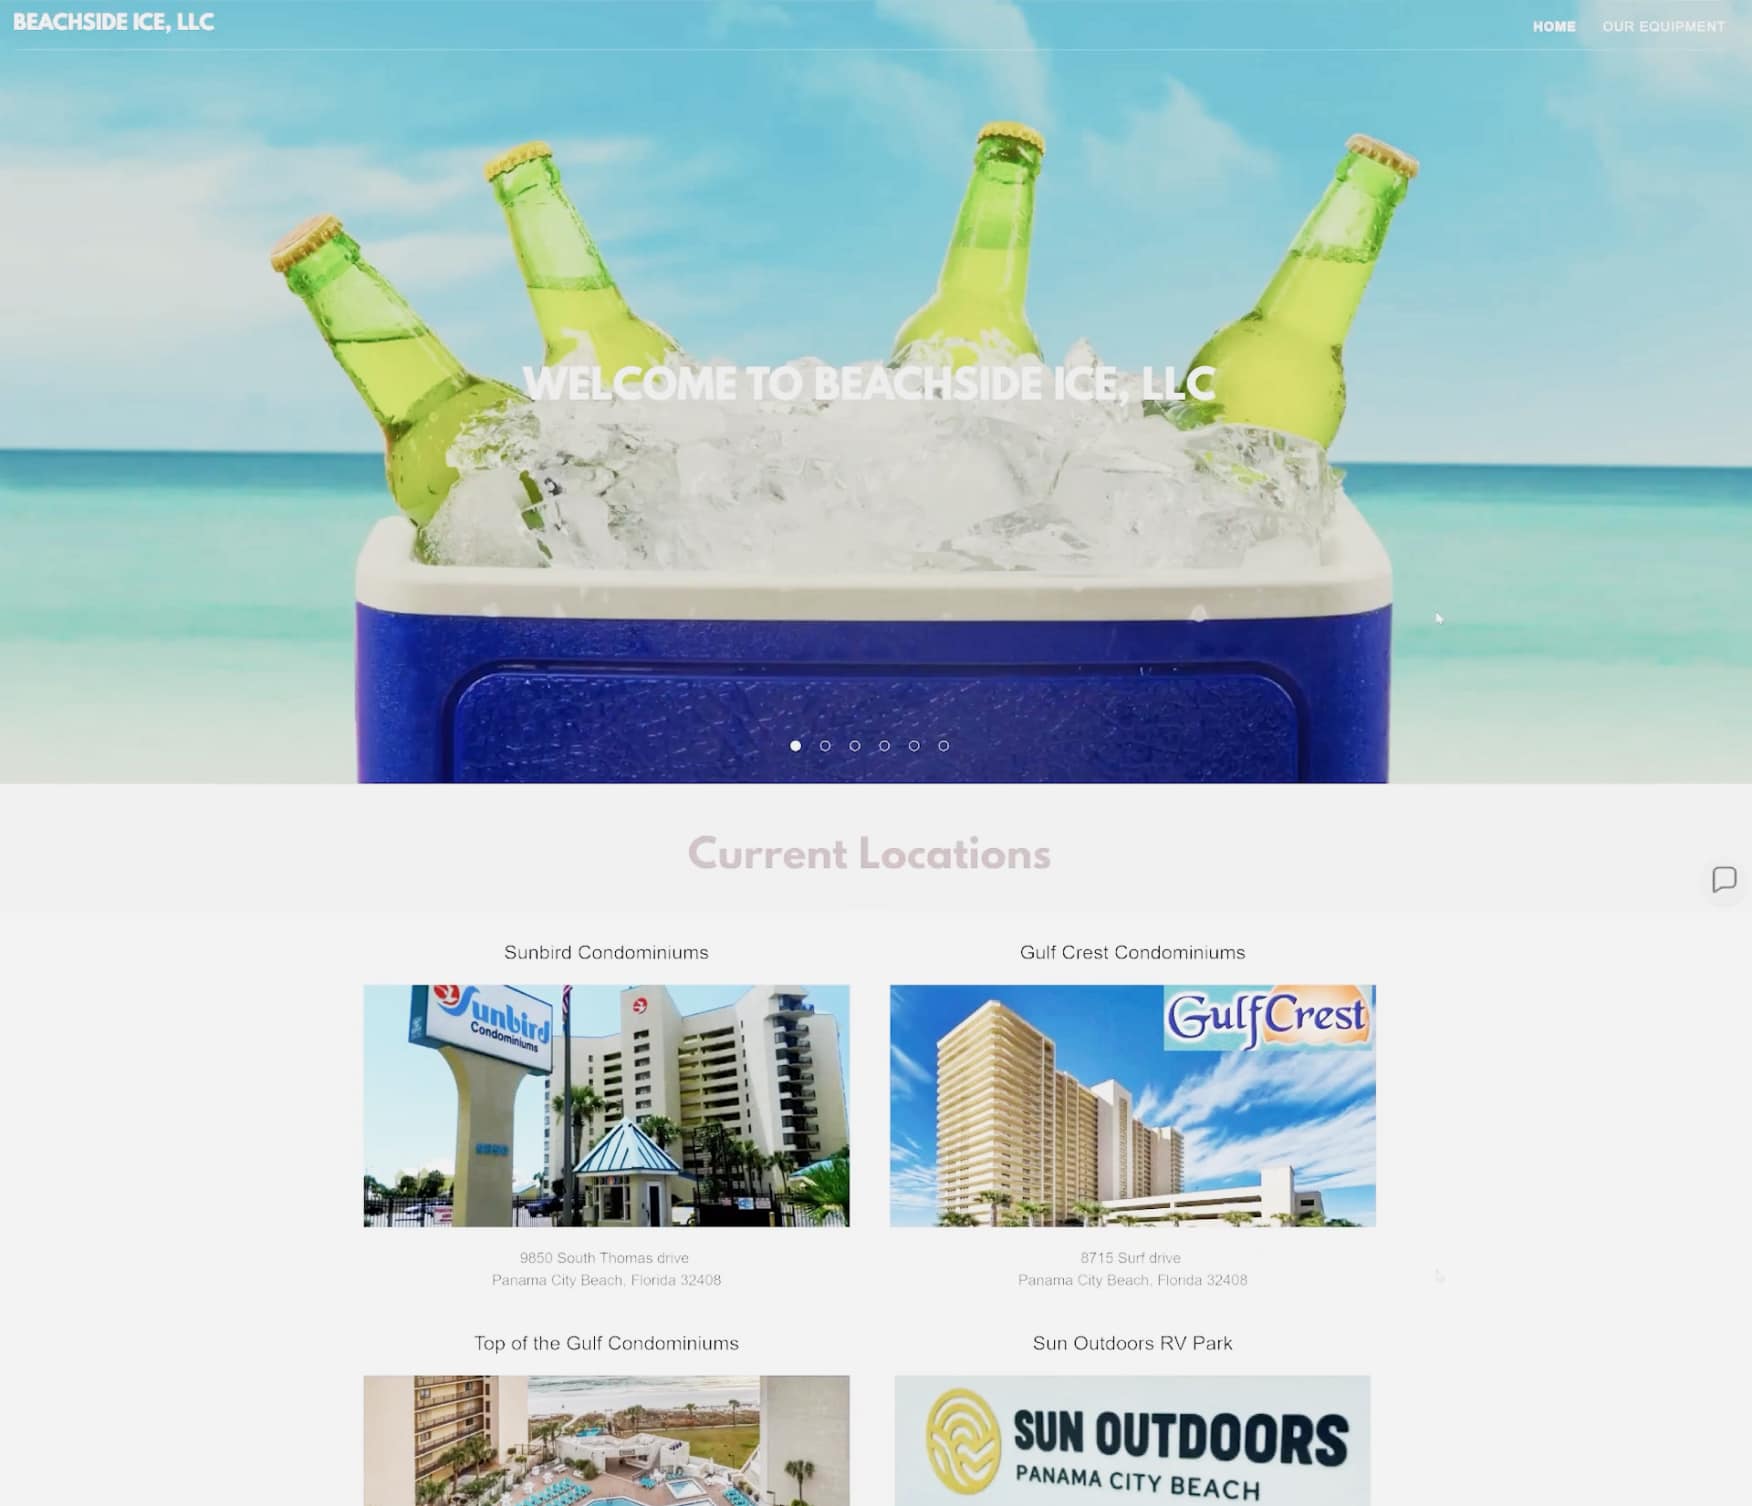 A screenshot of the Beachside Ice, LLC website